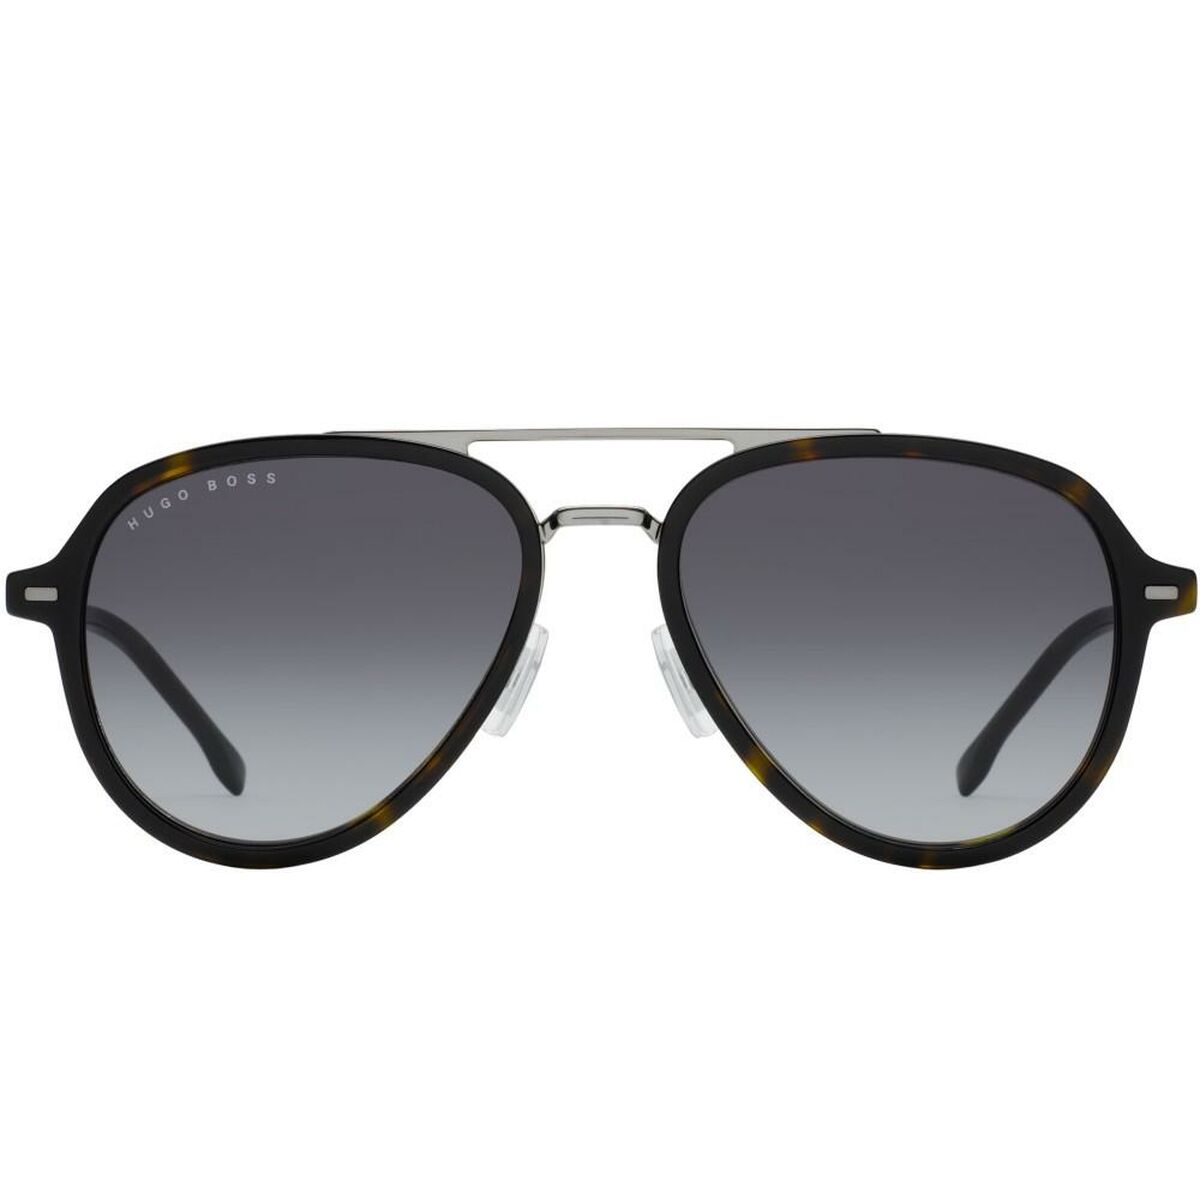 Kaufe Damensonnenbrille Hugo Boss BOSS 1055_S bei AWK Flagship um € 272.00